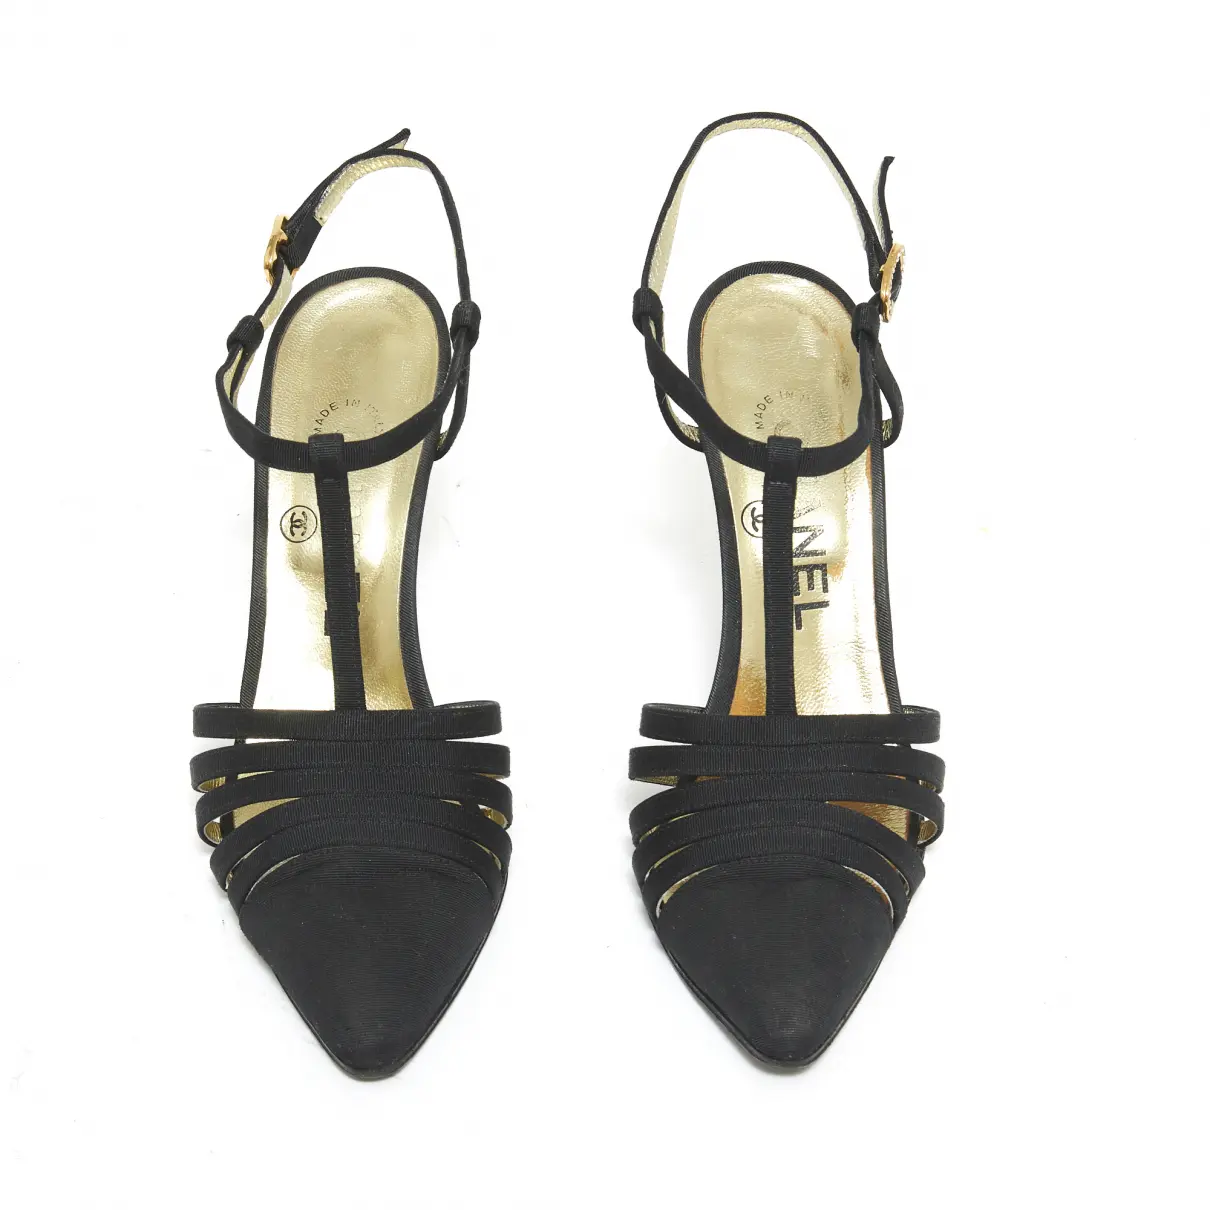 Buy Chanel Cloth heels online